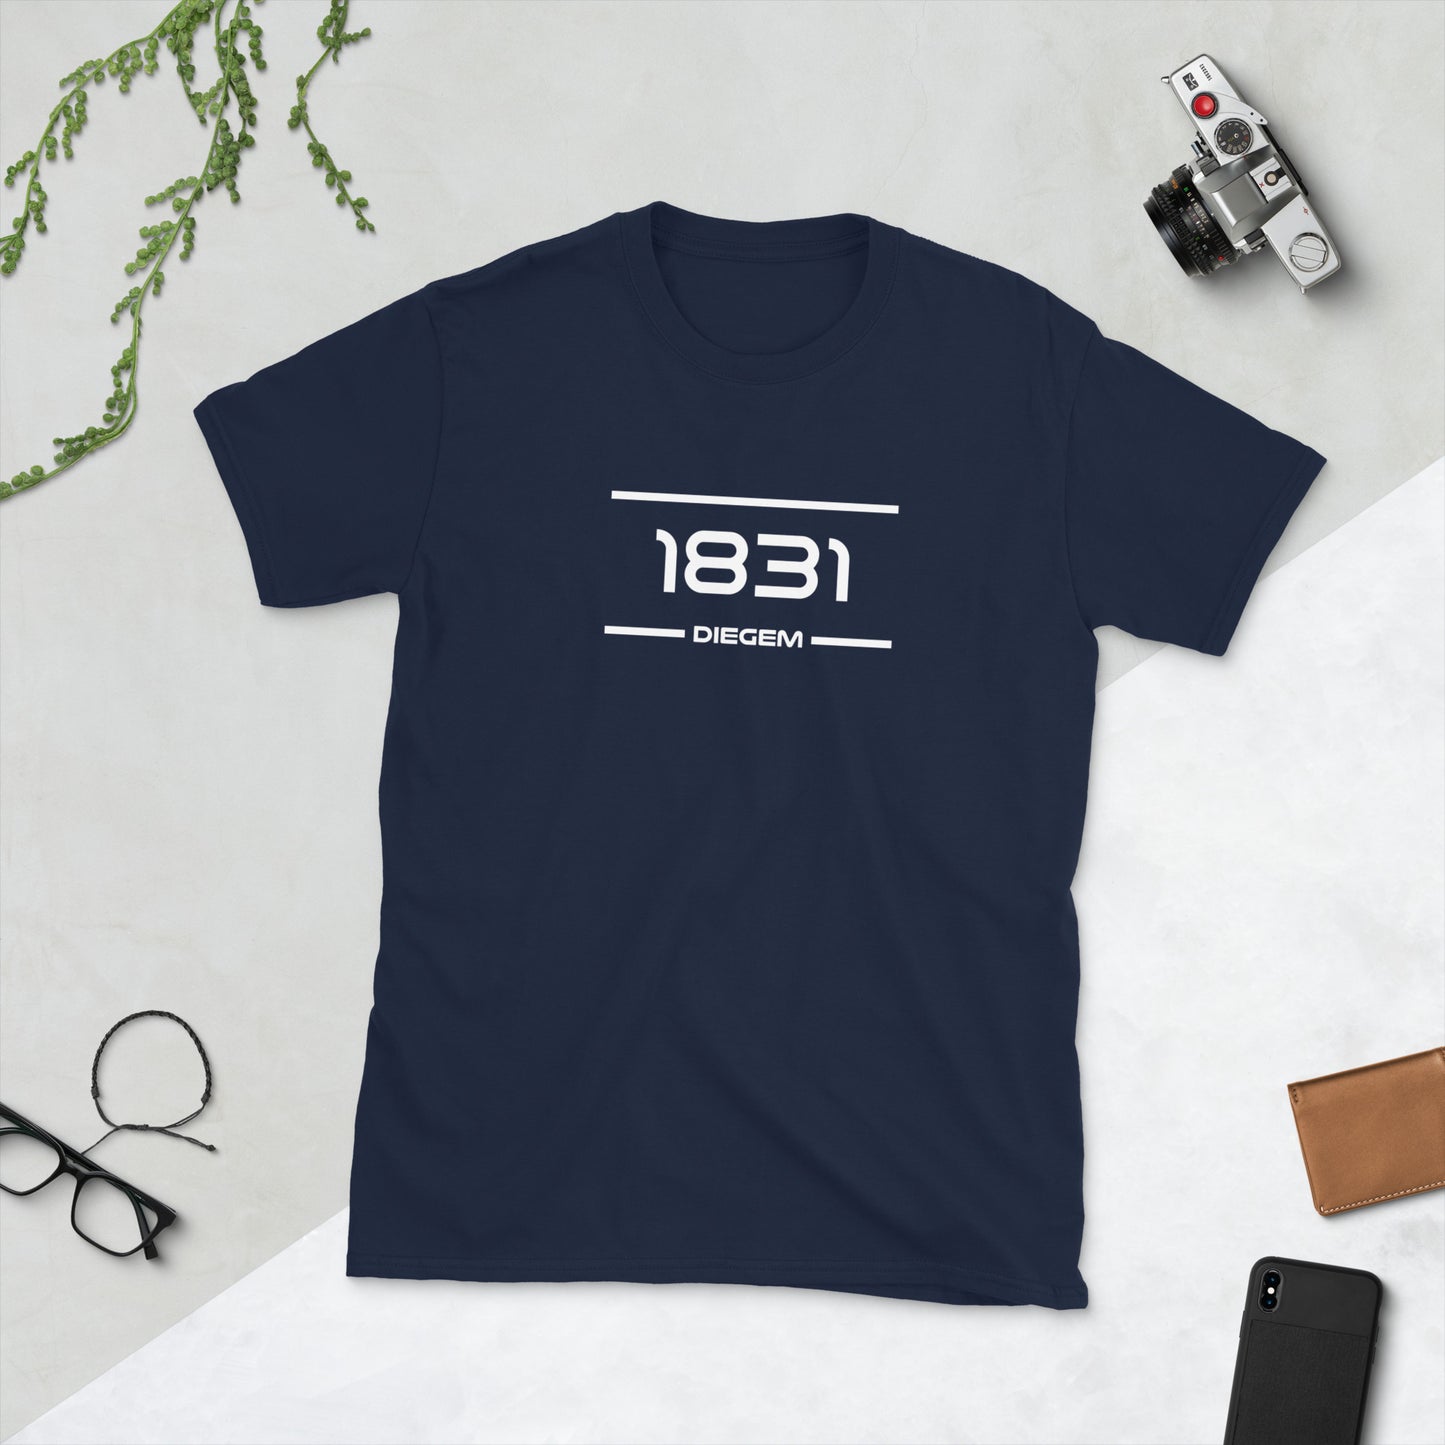 Tshirt - 1831 - Diegem